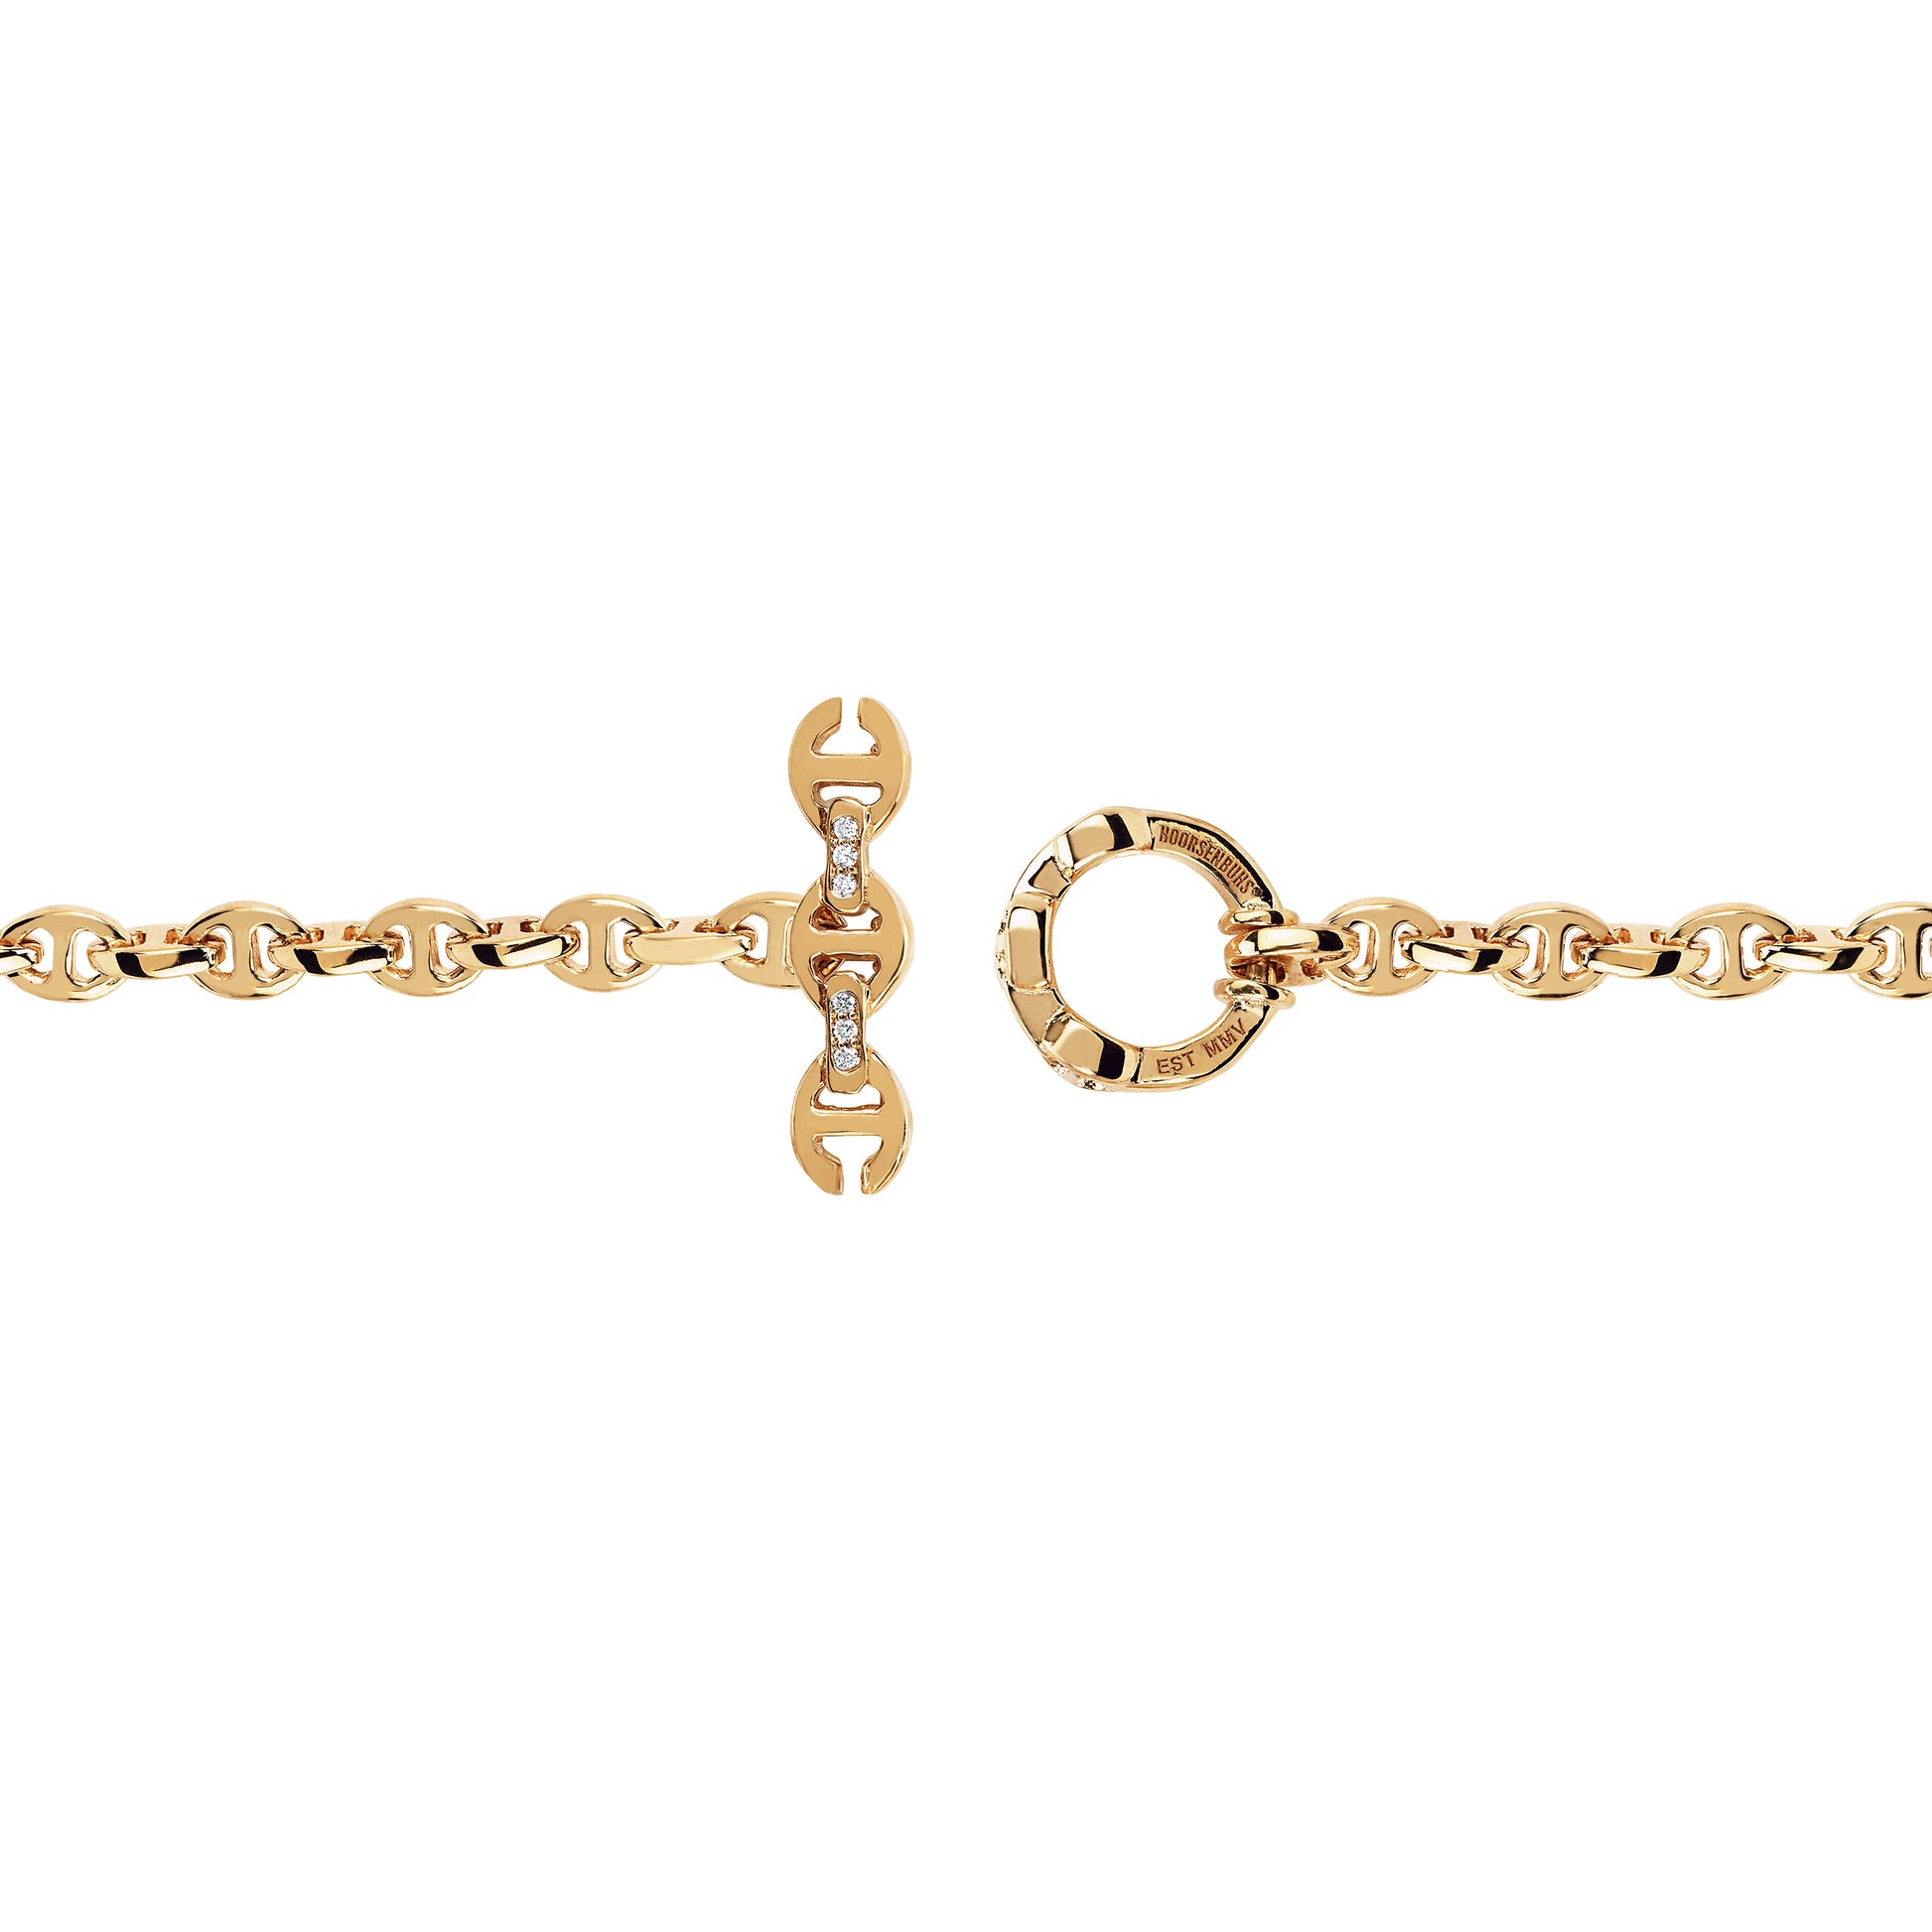 Hoorsenbuhs | 3mm Open-Link Monogram Bracelet 7 / 18K Rose Gold